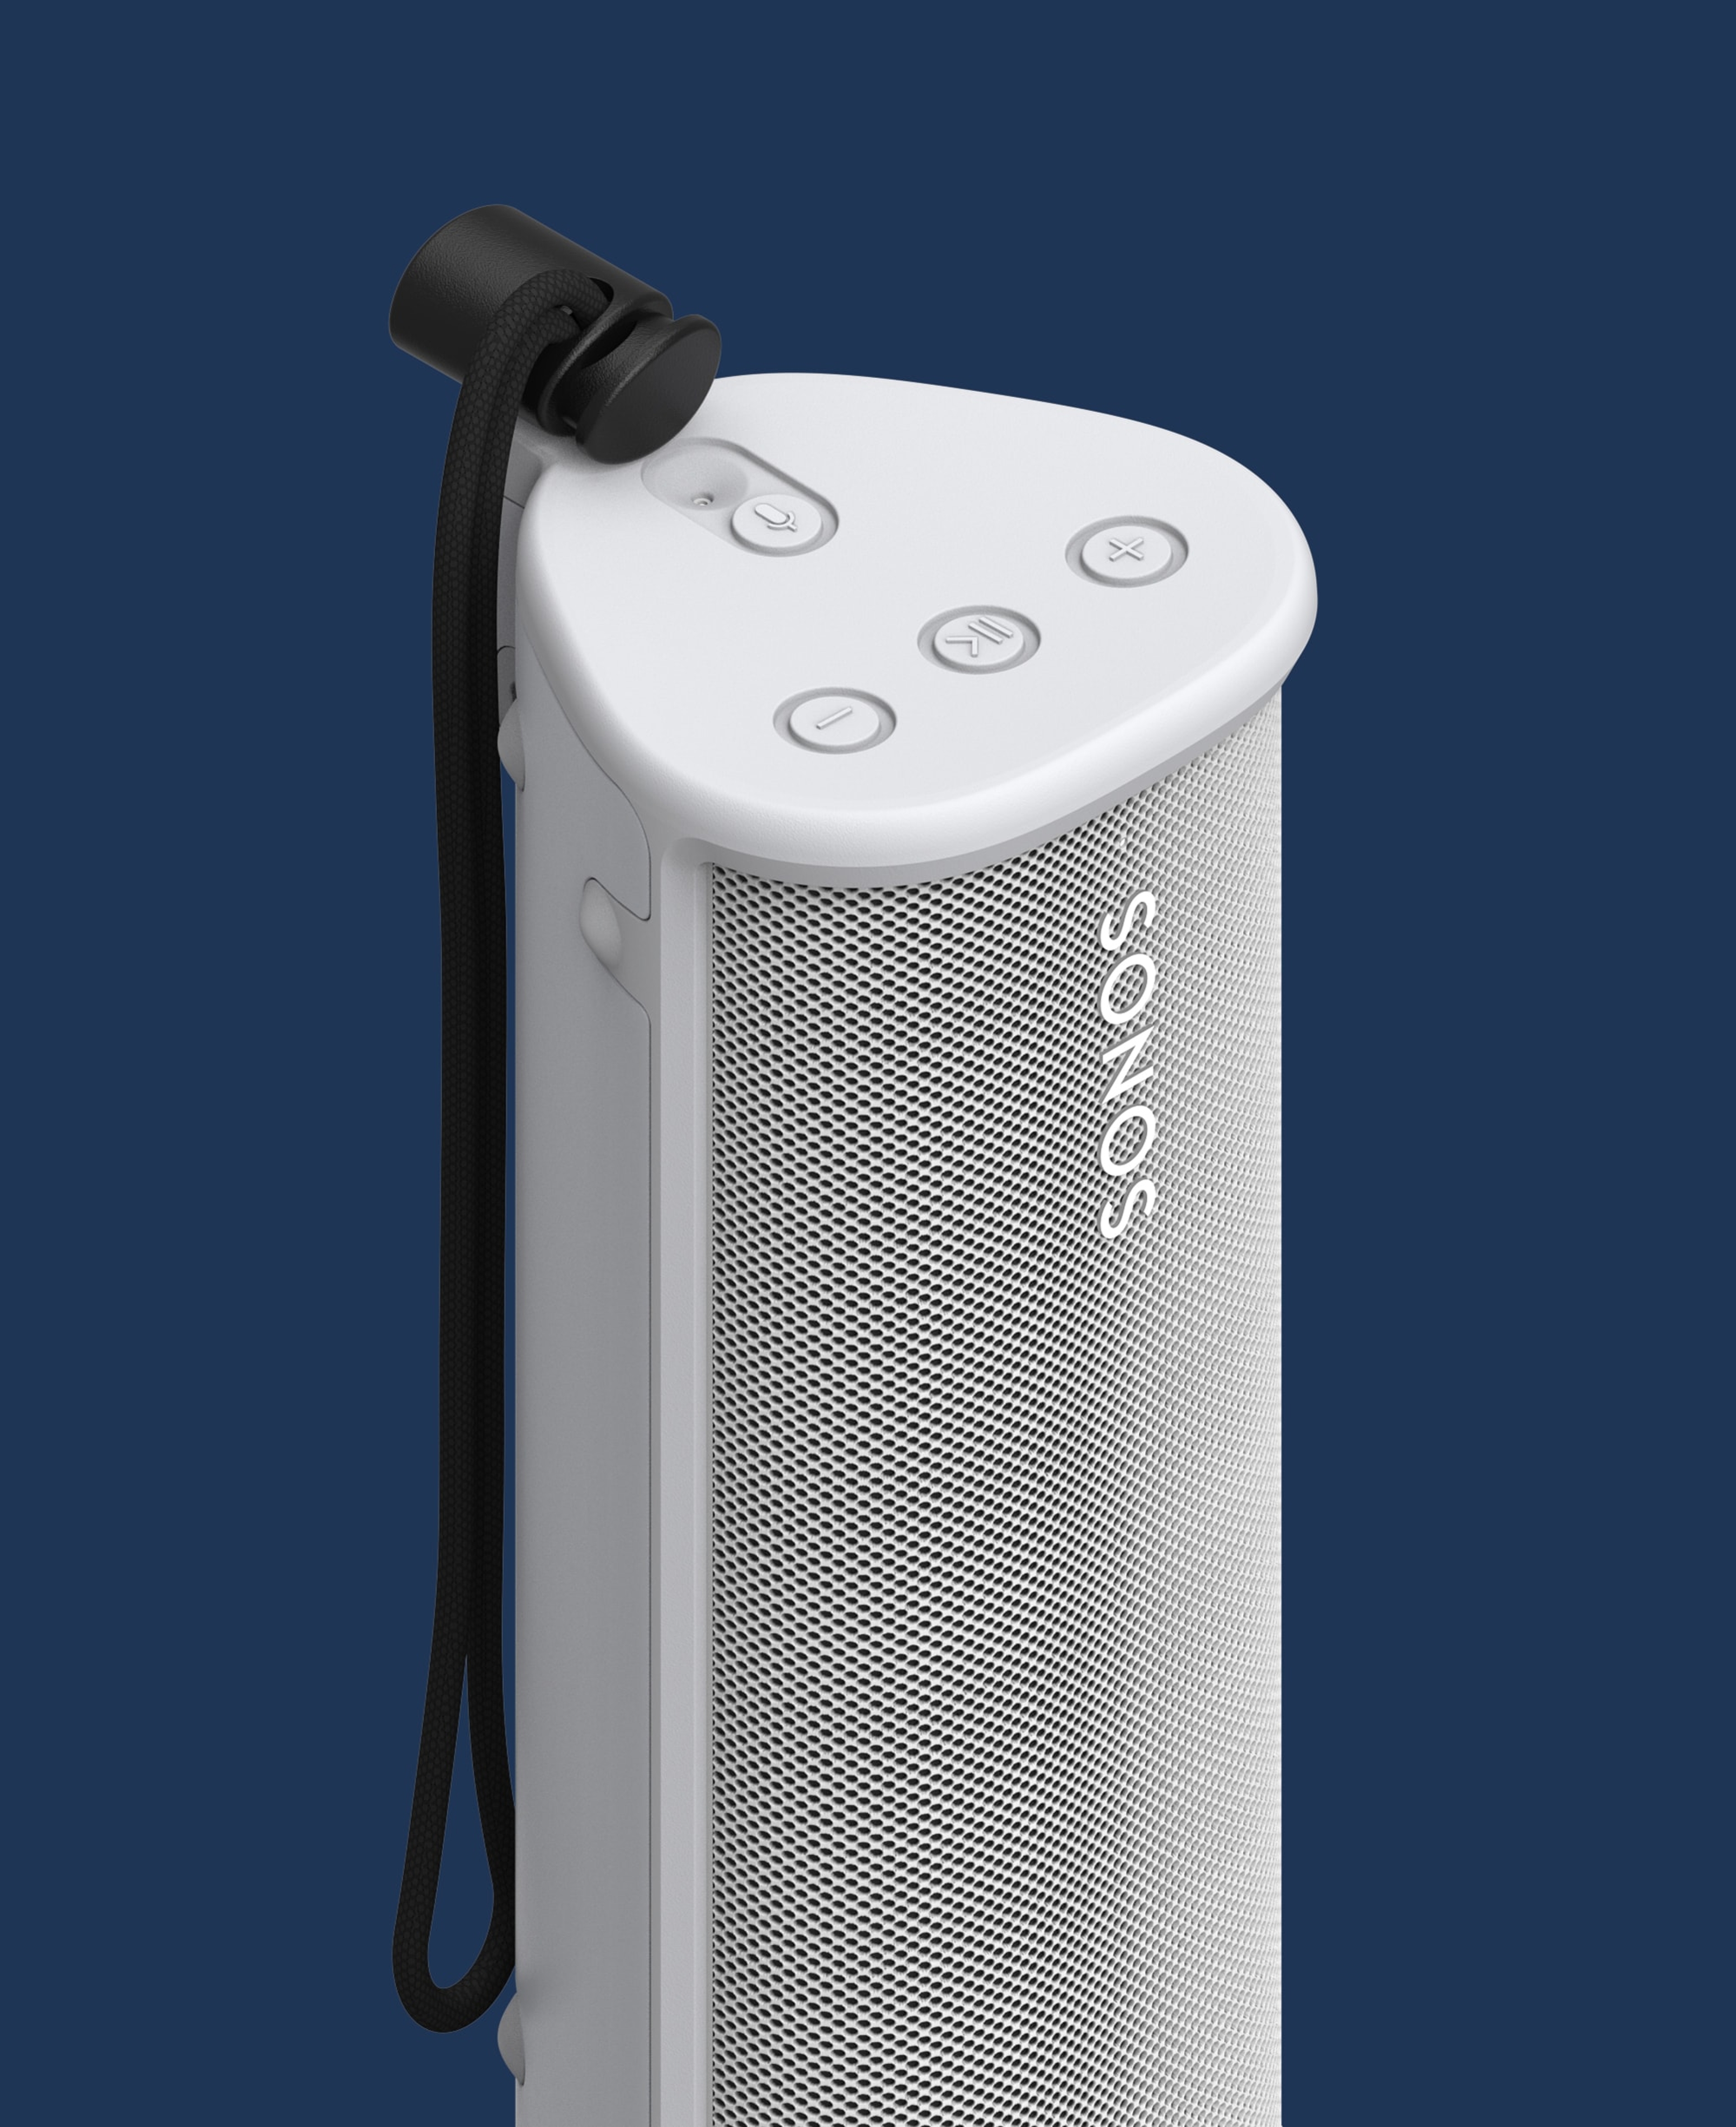 Bilde av en hvit Sonos Roam i en hvit OtterBox Sonos Roam-veske mot en blå bakgrunn